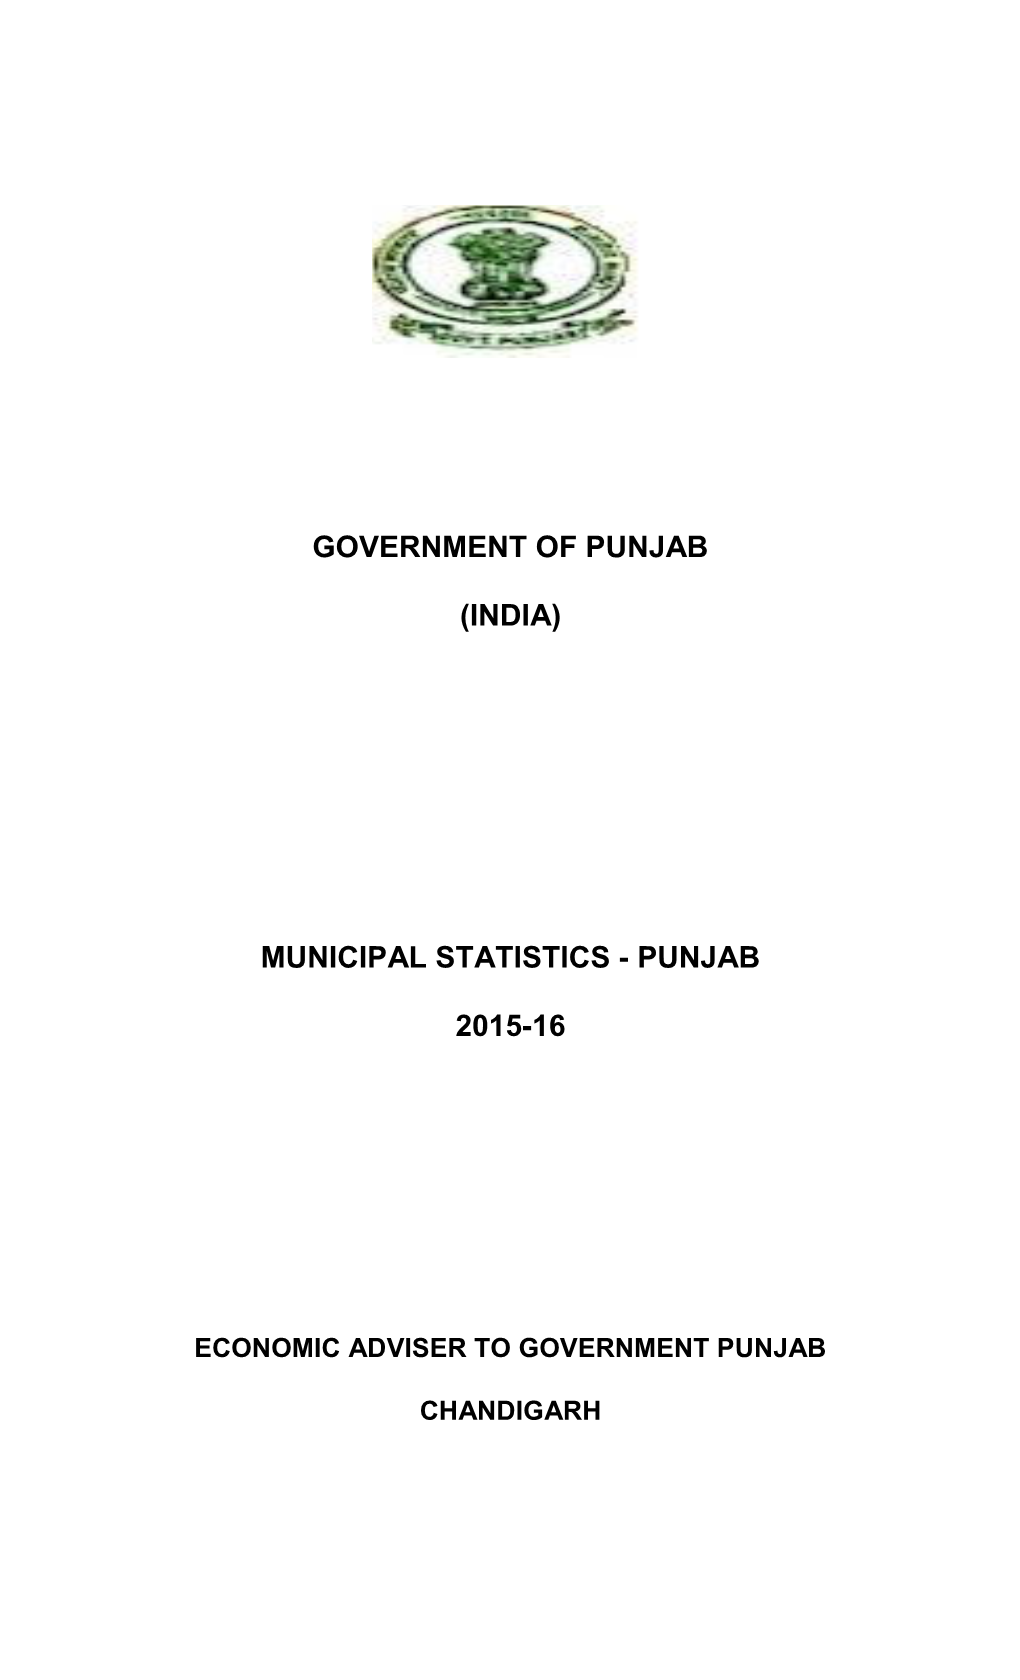 Municipal Statistics - Punjab